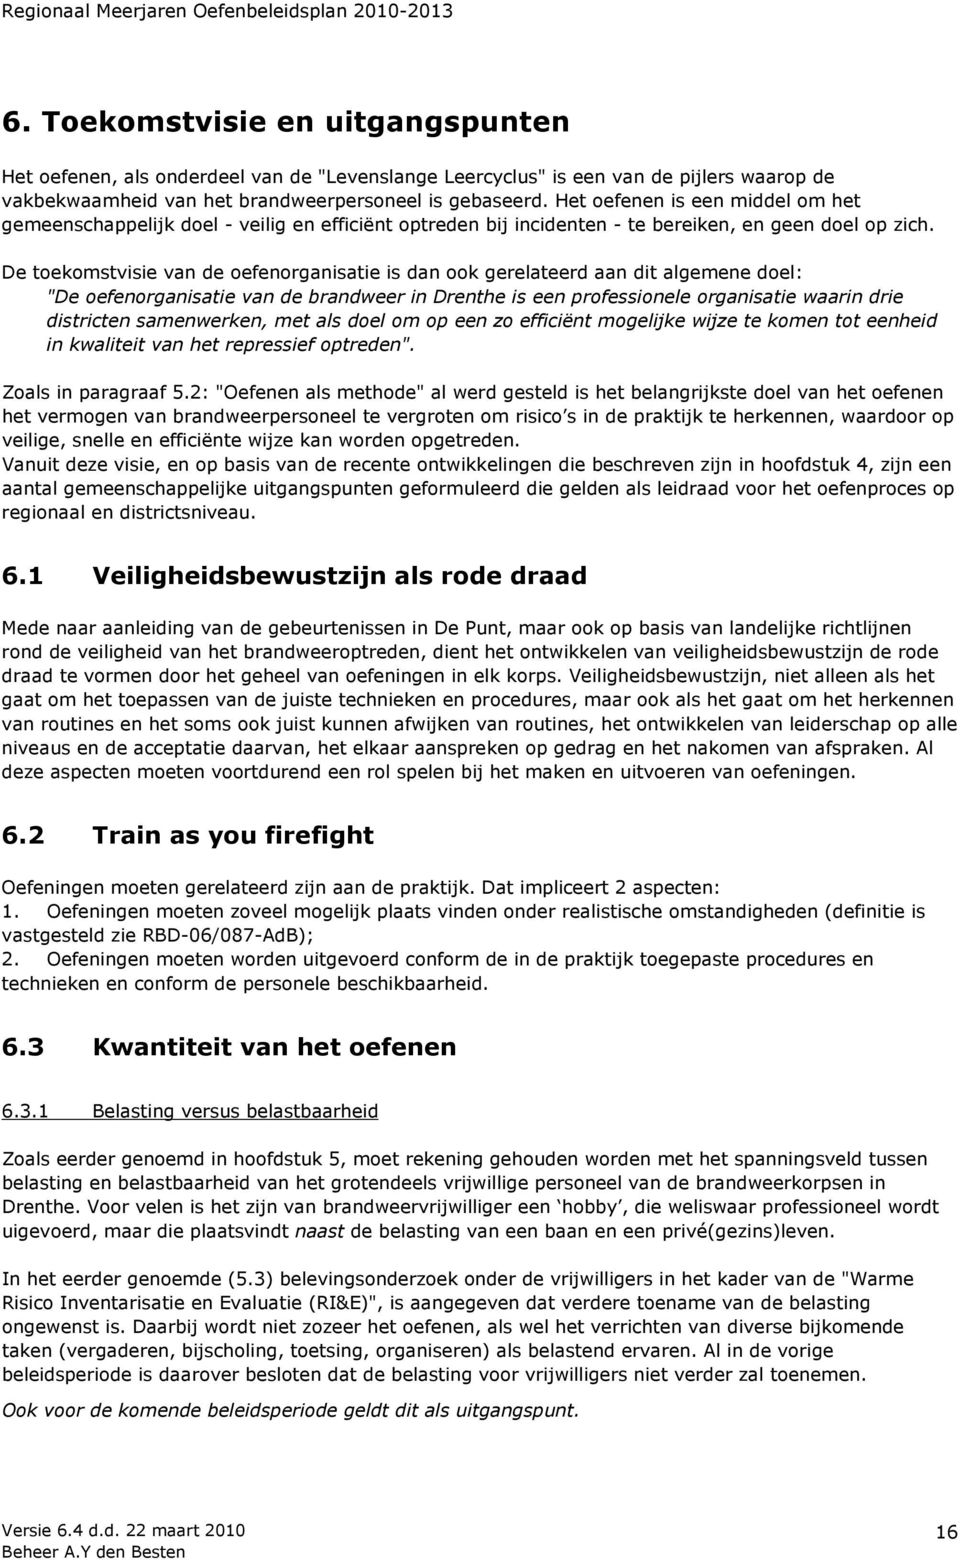 De toekomstvisie van de oefenorganisatie is dan ook gerelateerd aan dit algemene doel: "De oefenorganisatie van de brandweer in Drenthe is een professionele organisatie waarin drie districten